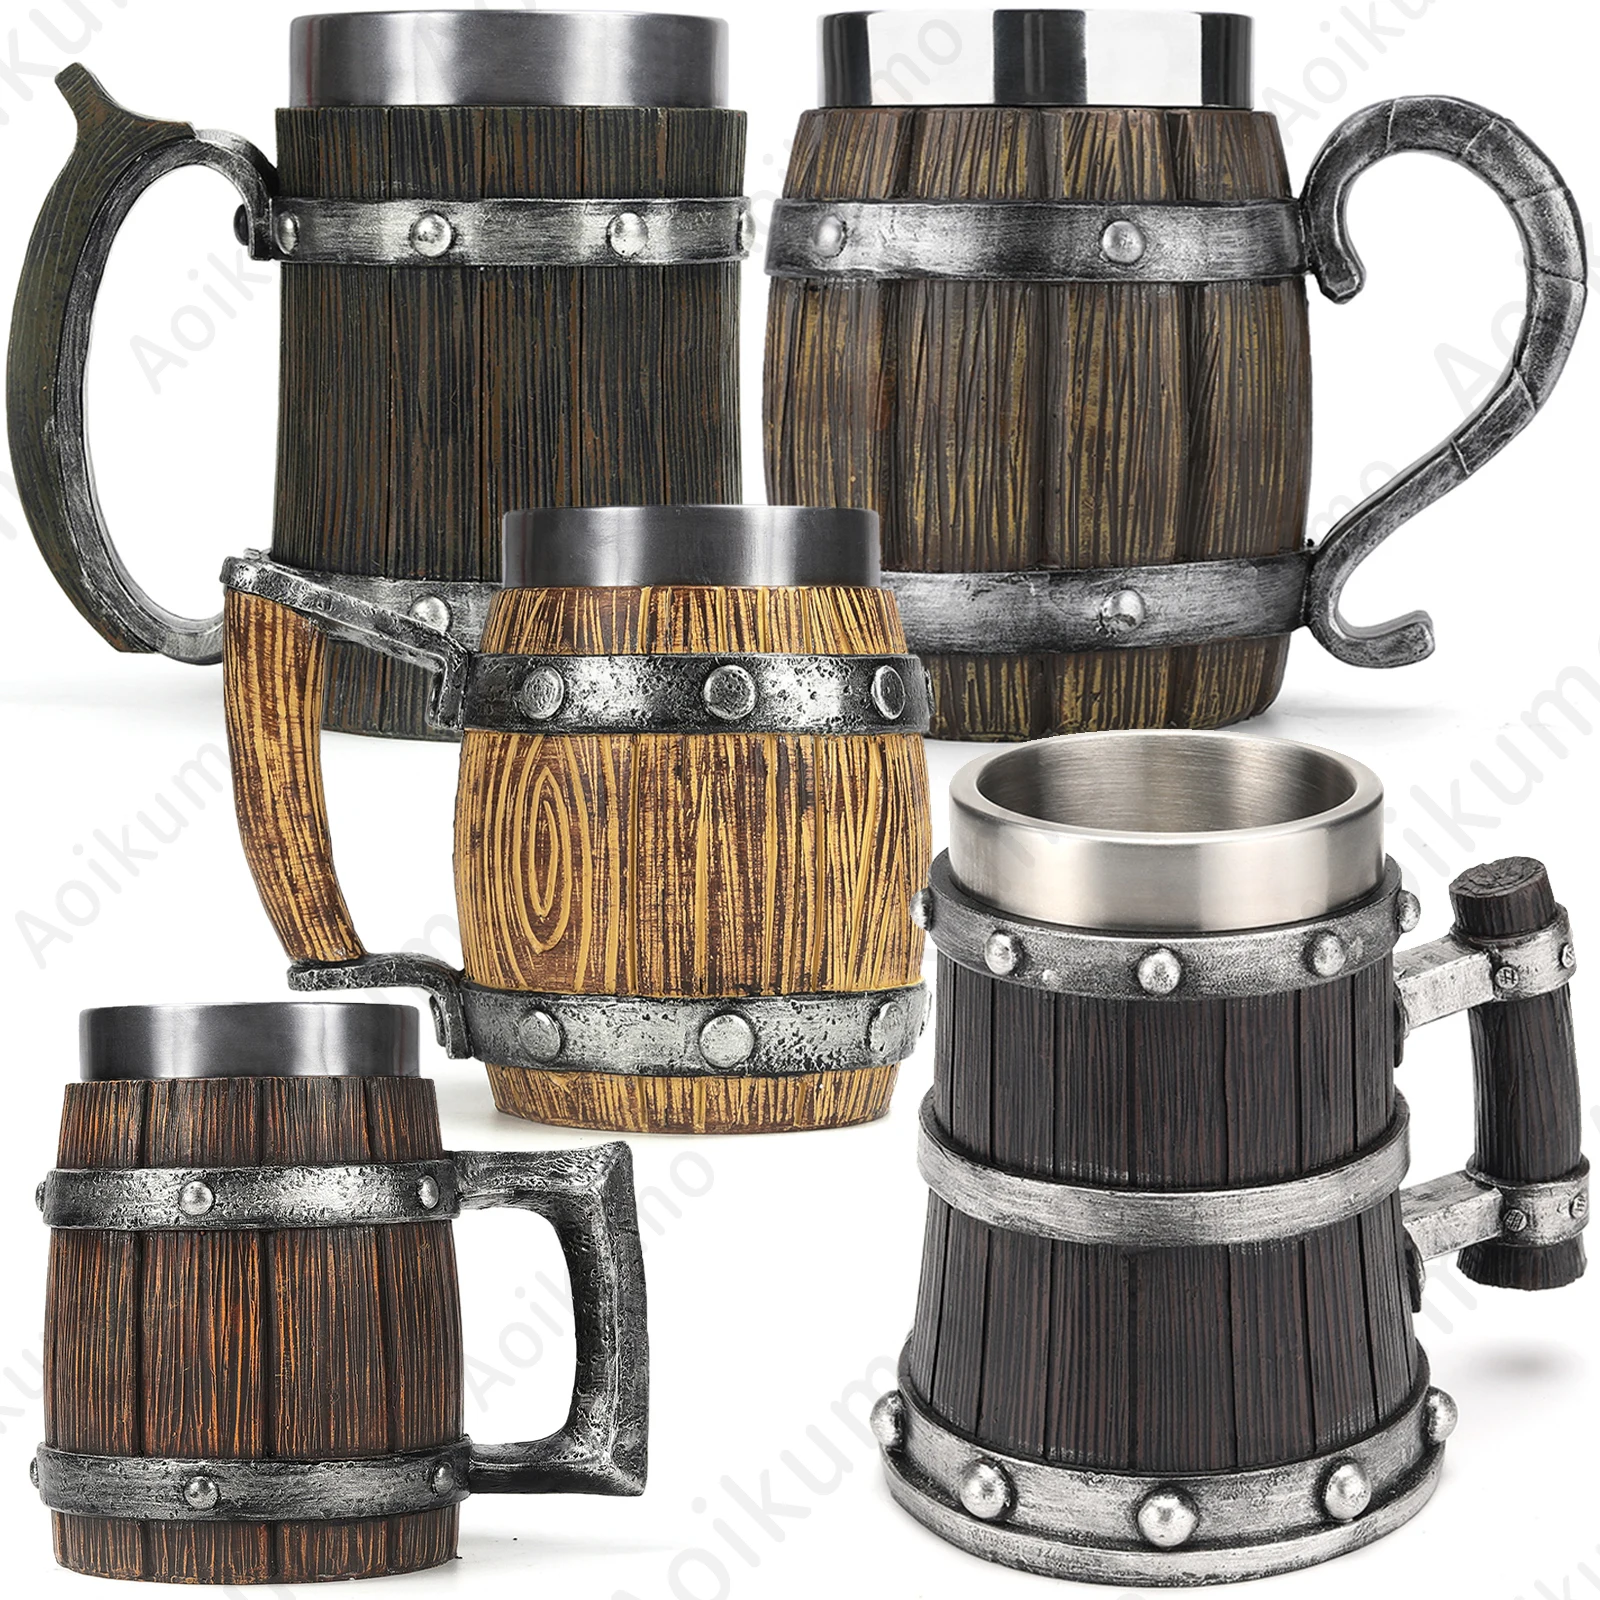 https://ae01.alicdn.com/kf/S87402a0108554f3789abe581aaf93a9aY/New-Viking-Wood-Grain-Beer-Mug-304-Stainless-Steel-Medieval-Tavern-Wood-Imitation-Barrel-Tankard-Beer.jpg